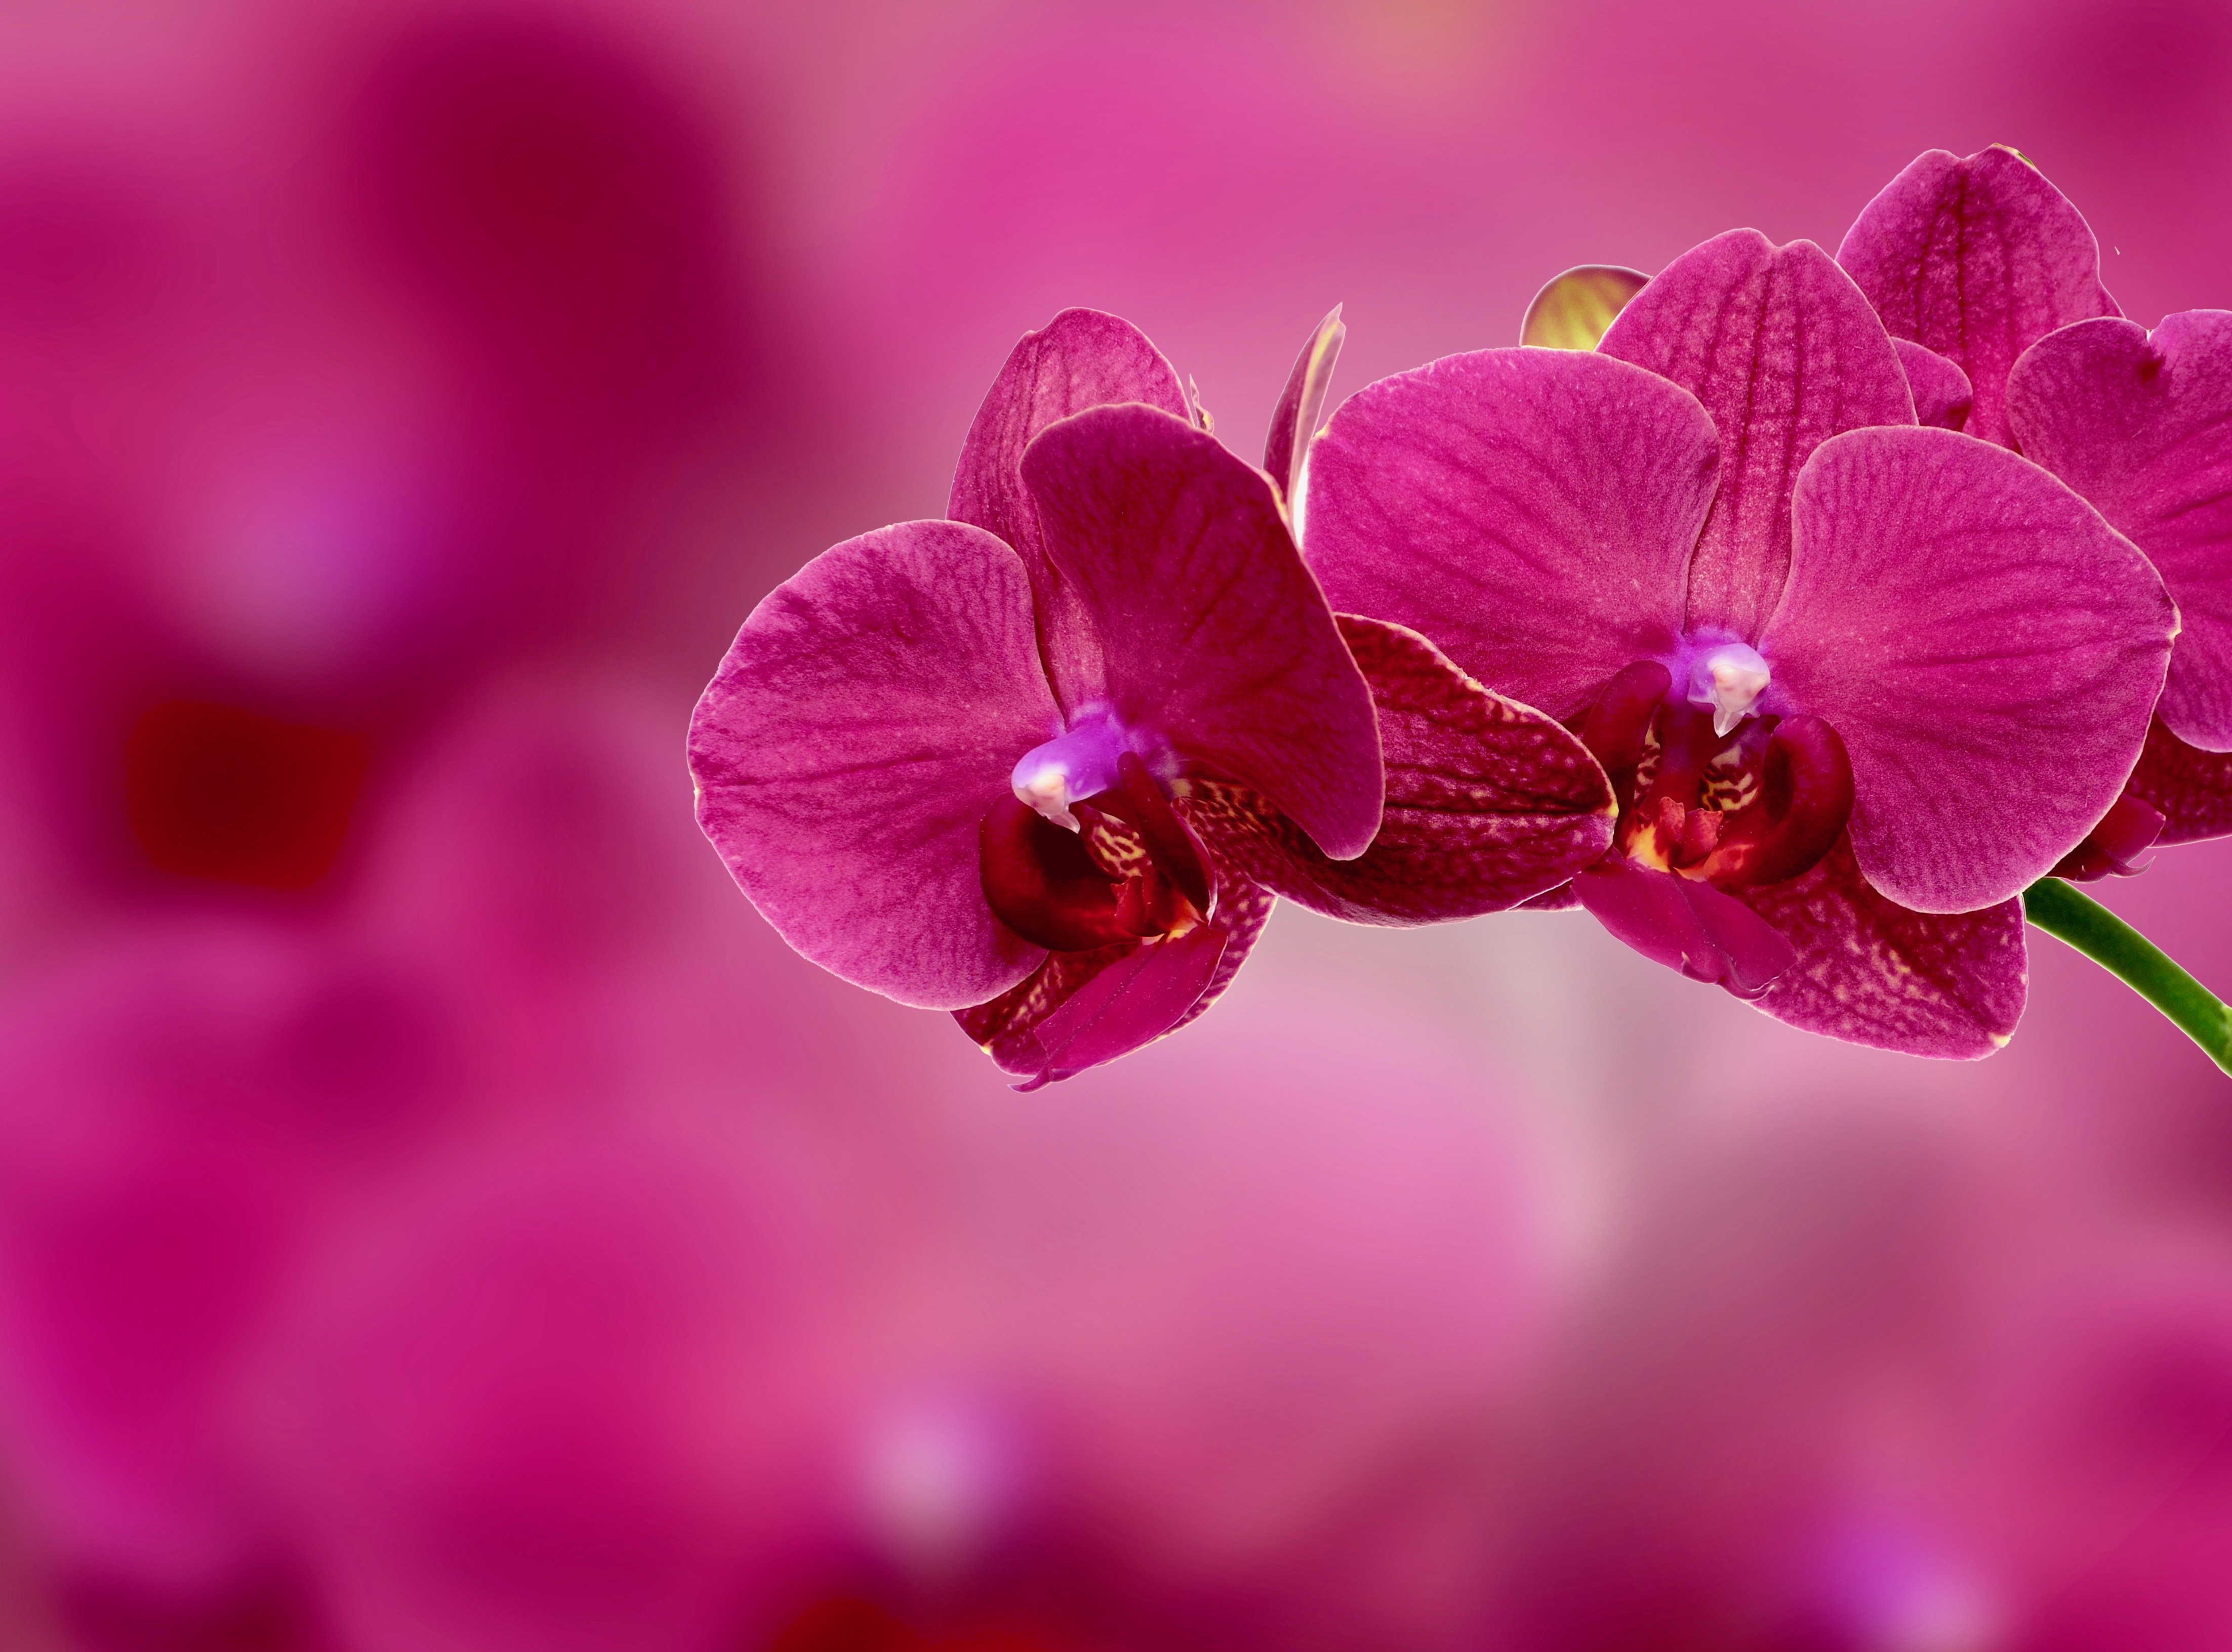 Обои Орхидеи, картинки, фото обои для рабочего стола Орхидеи